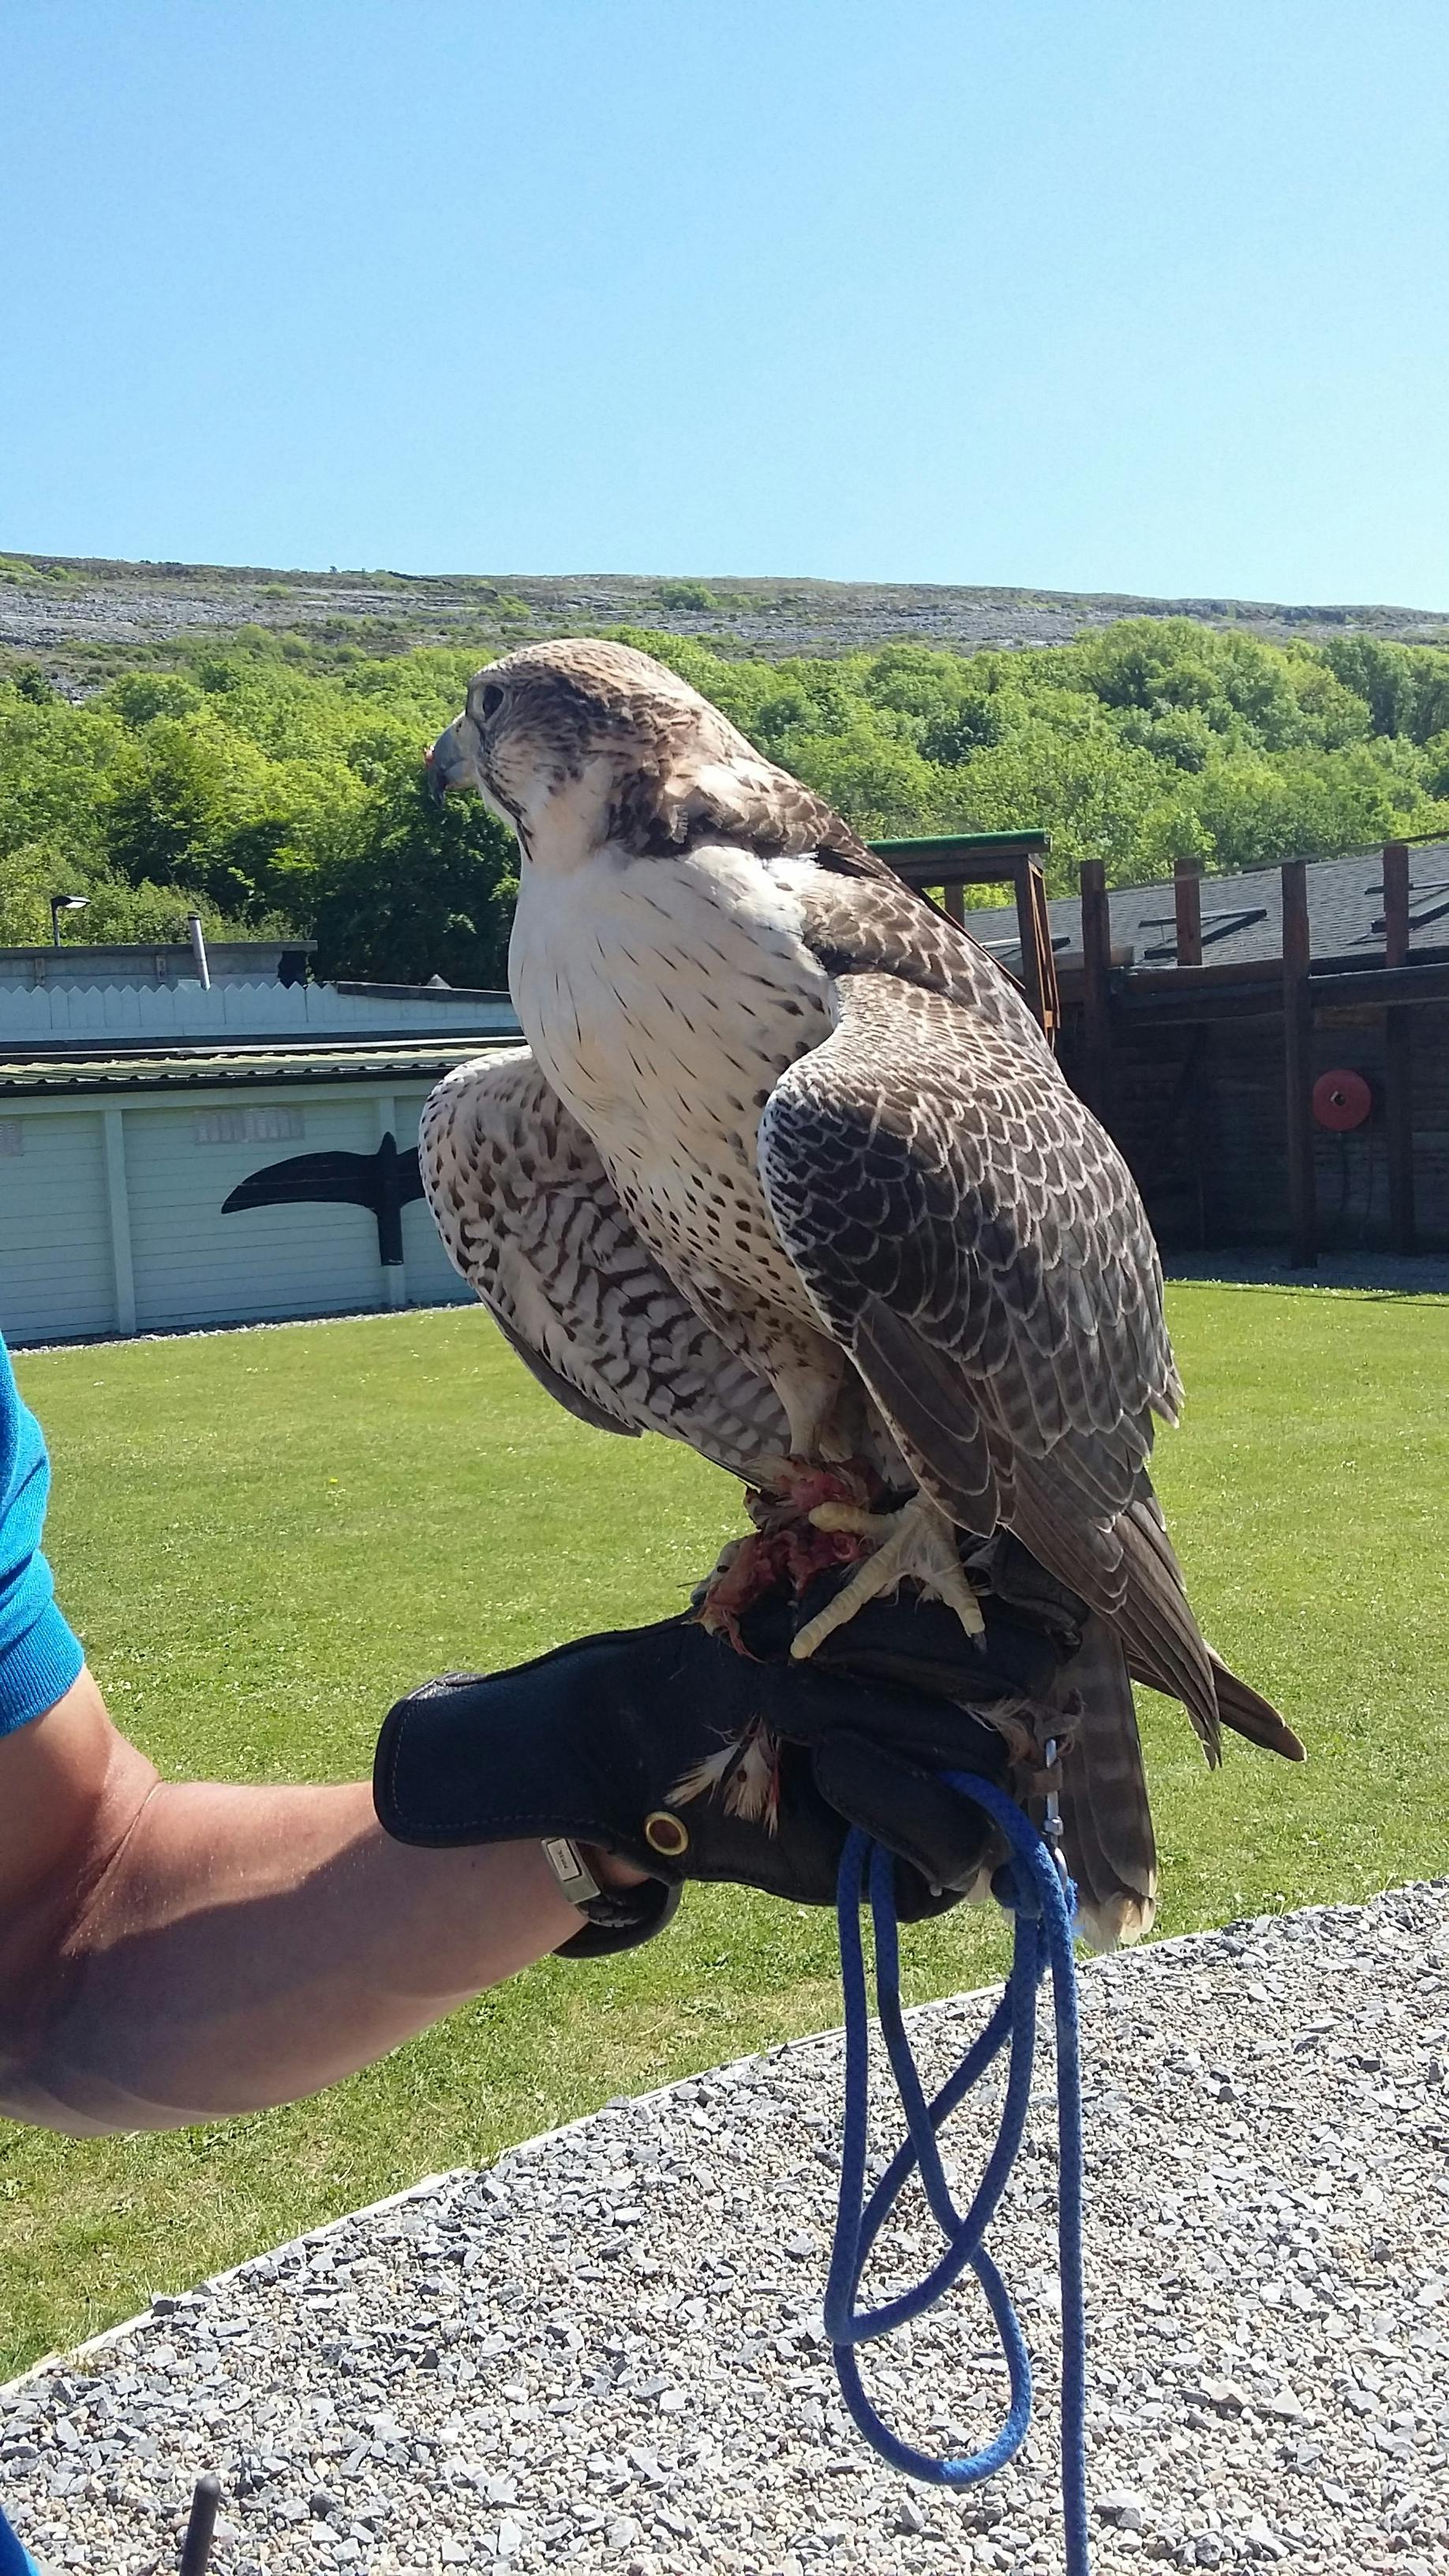 falcon vs hawk pictures